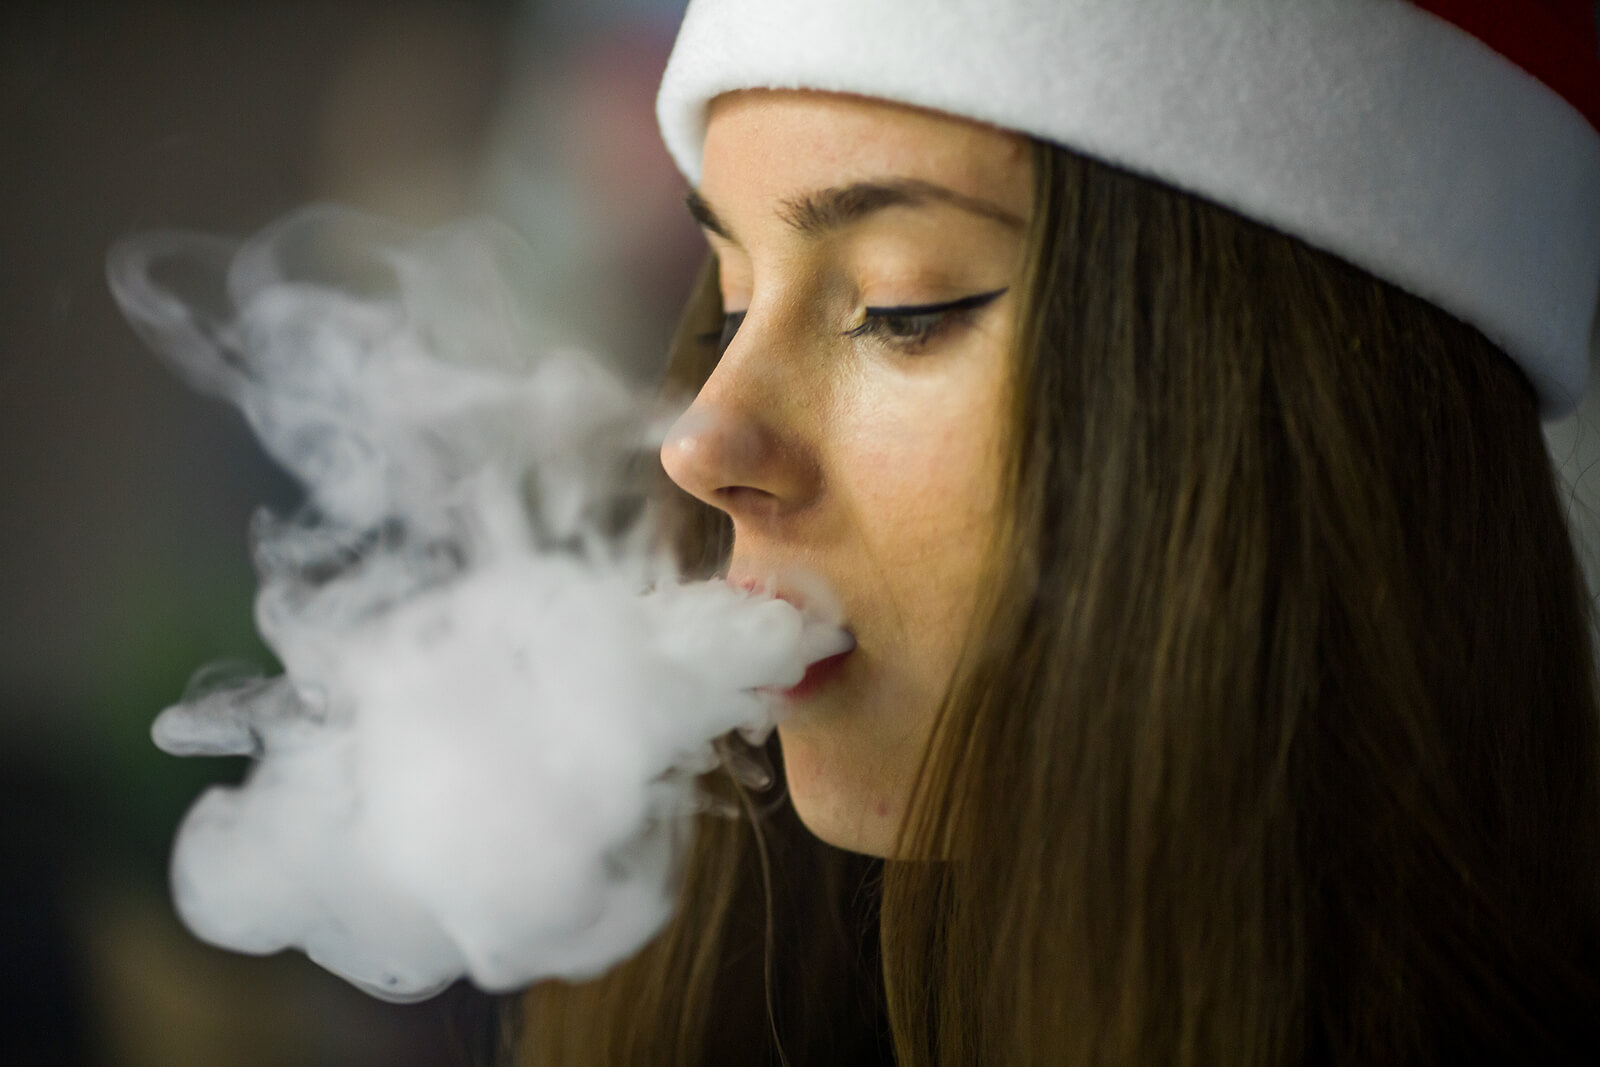 Chica adolescente soltando el humo del cigarro.